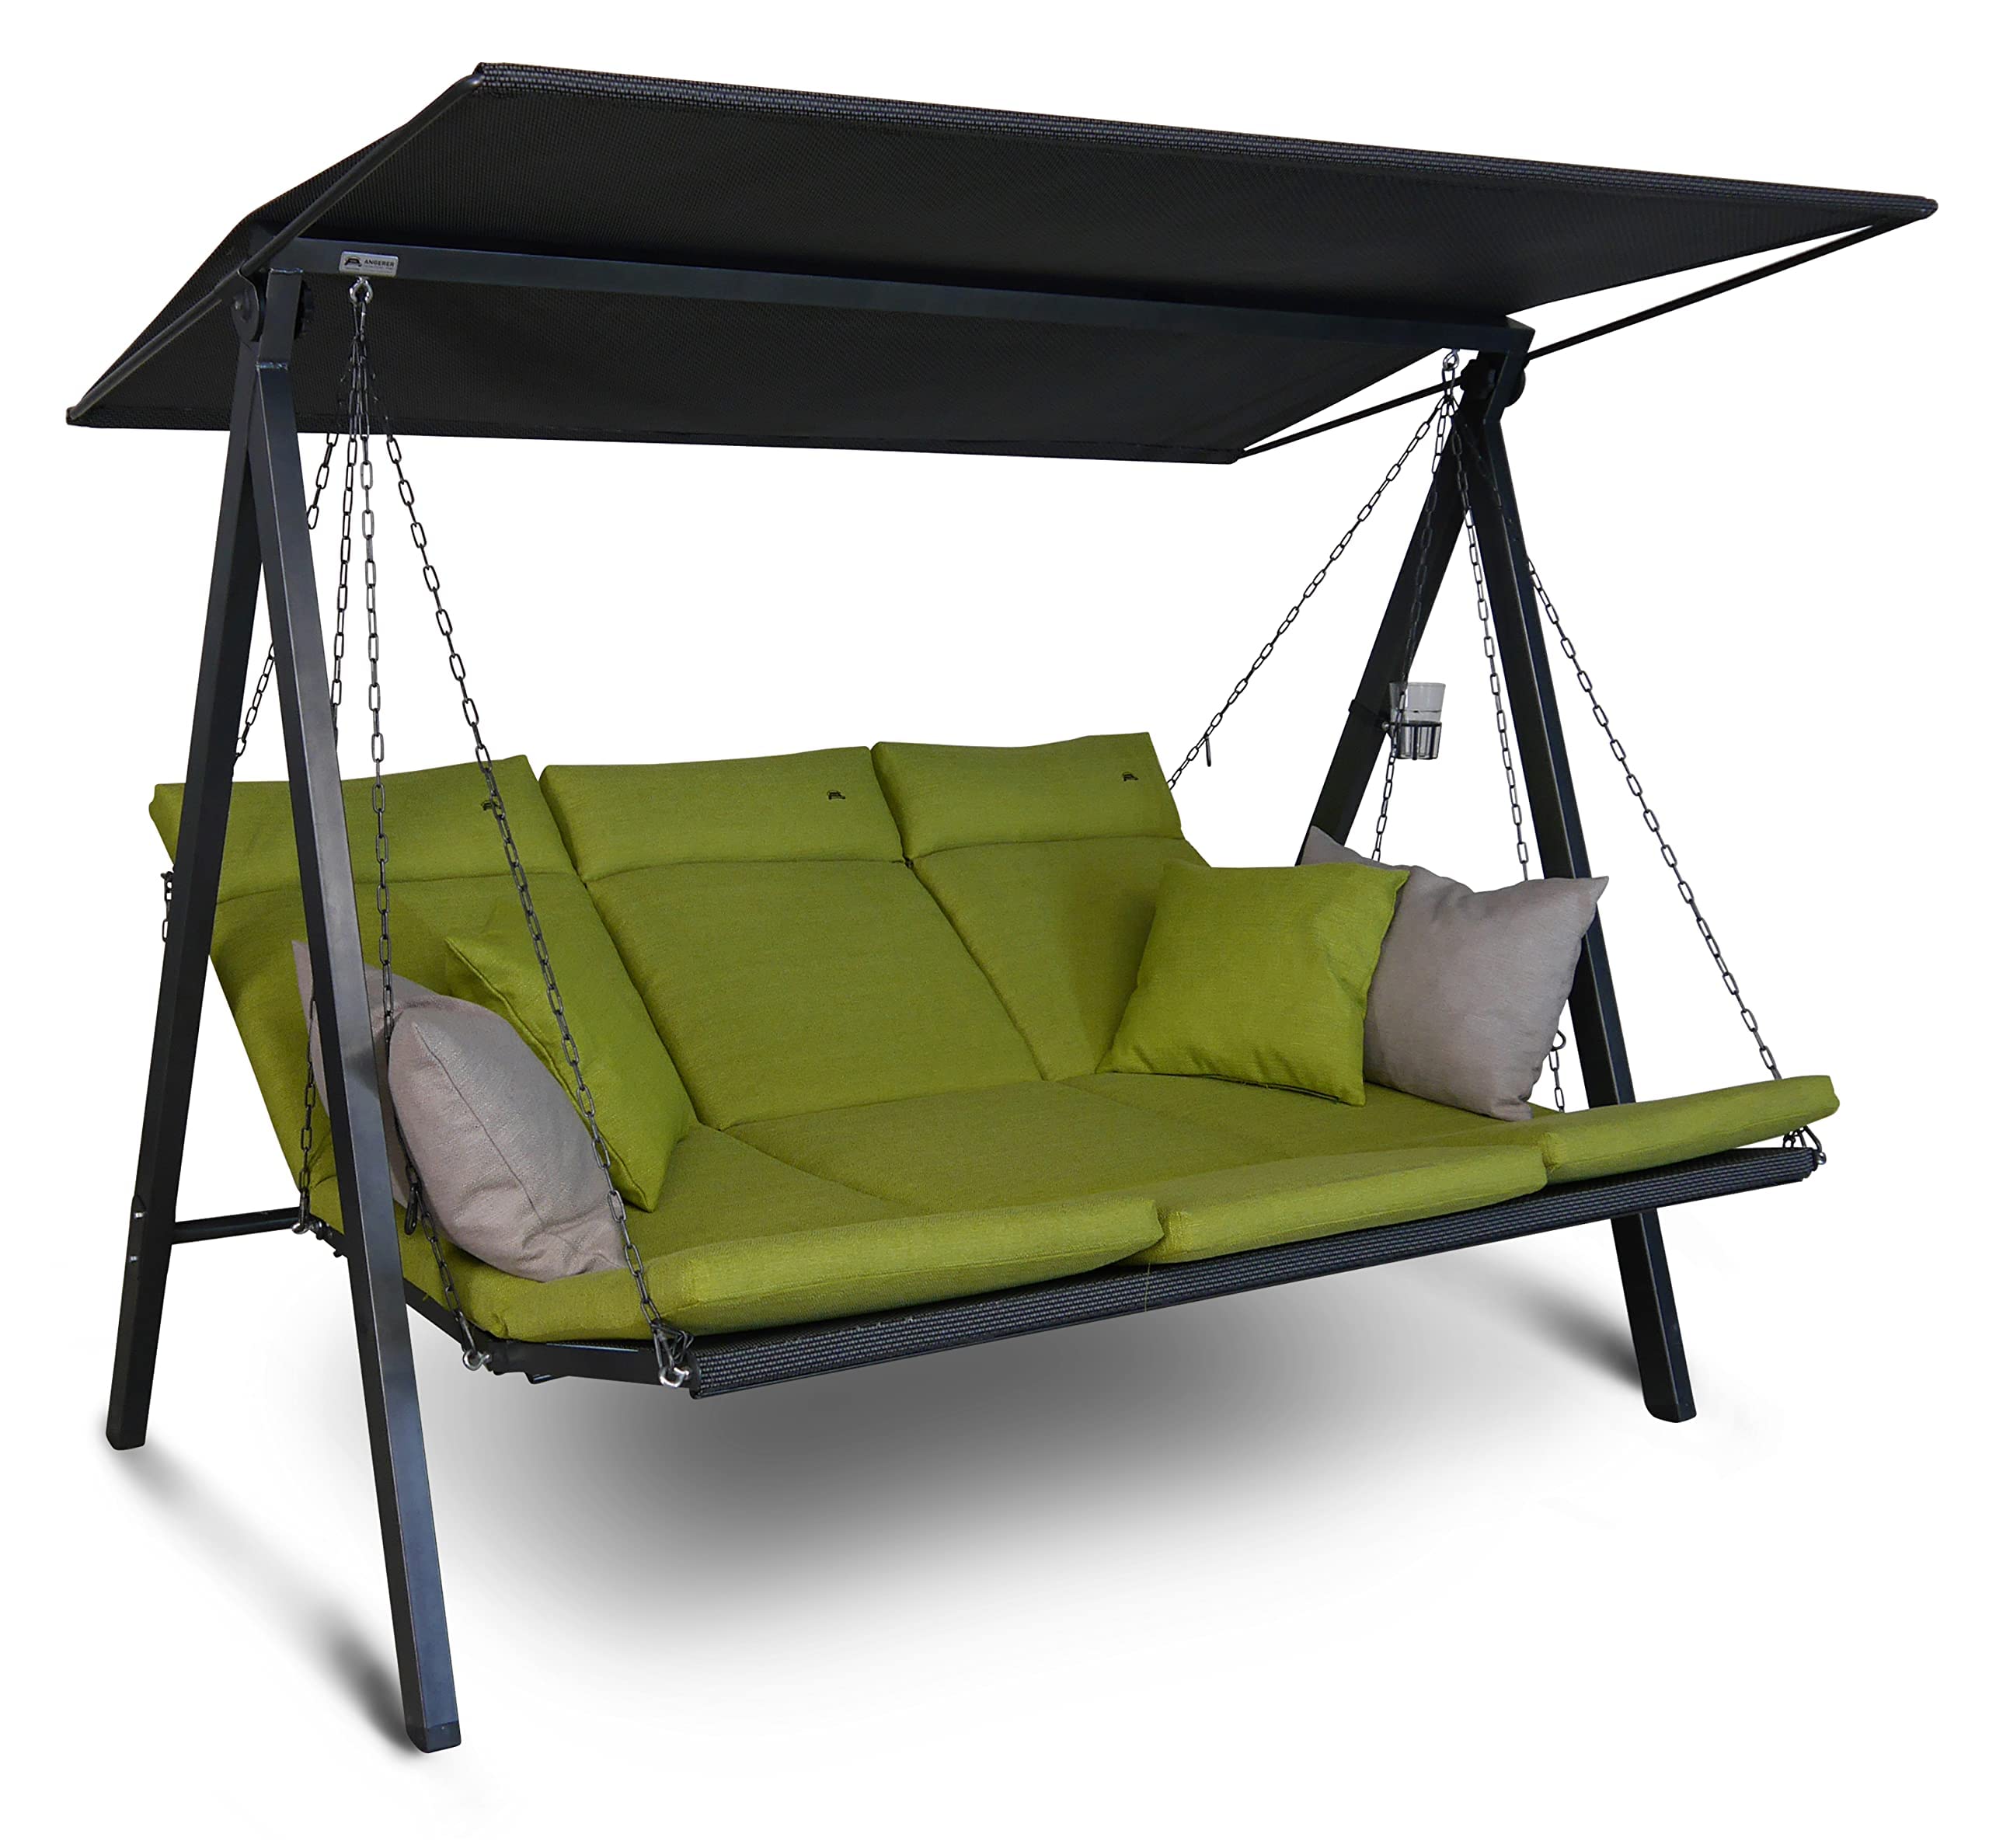 Angerer Hollywoodschaukel Lounge - Gartenschaukel Made in Germany - Schaukel zum Sitzen, Liegen und Entspannen - inklusive Bett-Funktion - einfache Montage (Grün)